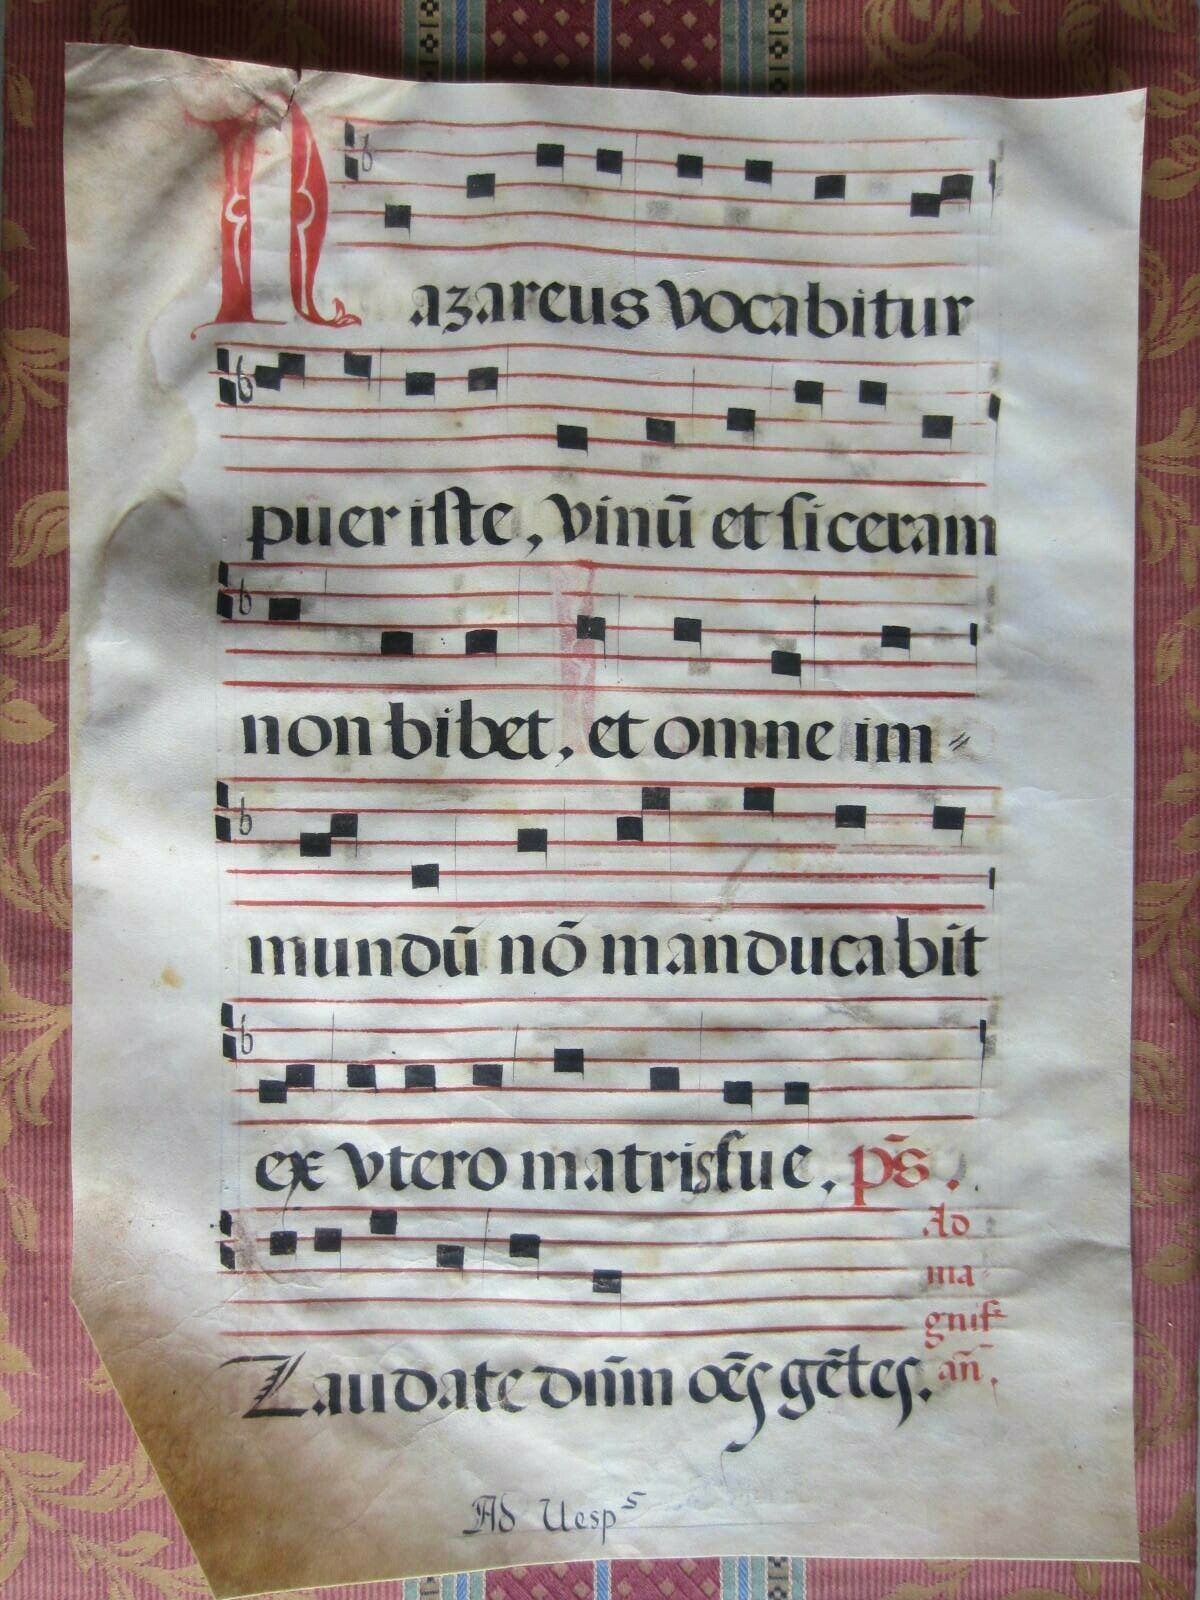 1550c- Antiphonary. Parchment.pergamino.mÚsic. Original Sheet.big